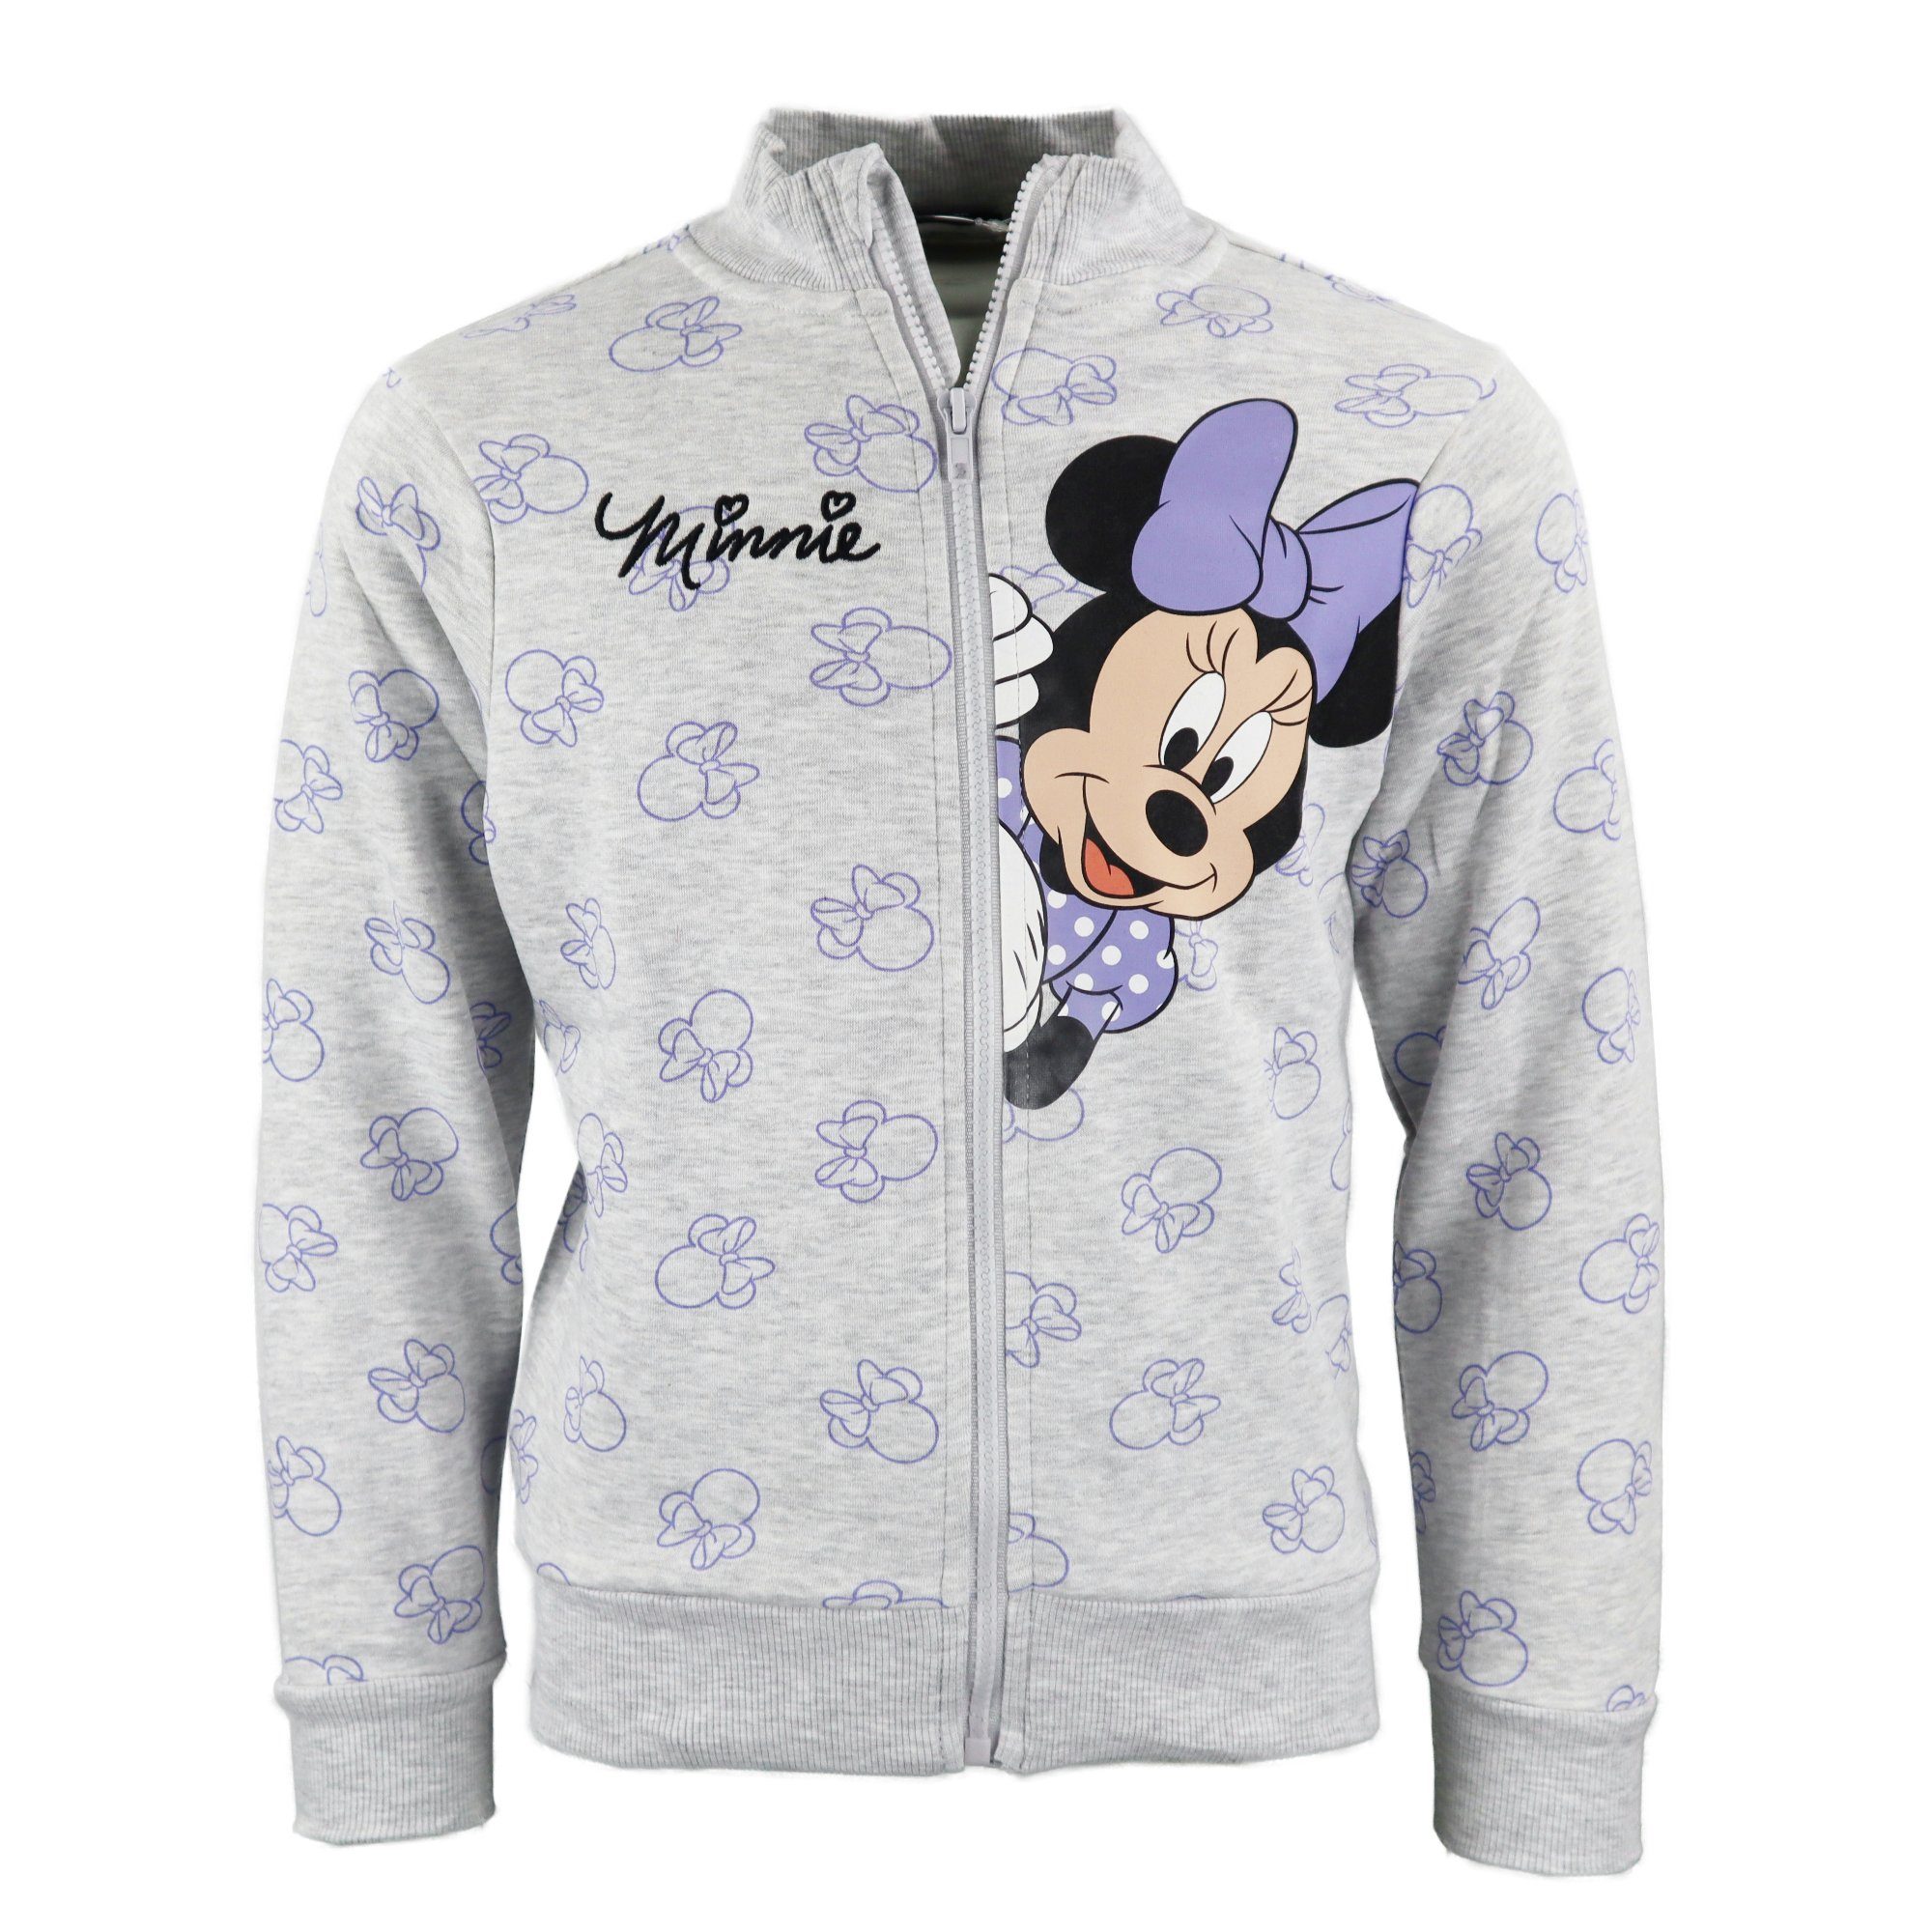 Pulli Gr. Maus Sweater Pullover Grau Disney Kinder 98-128 Reißverschluss Disney Mädchen Minnie